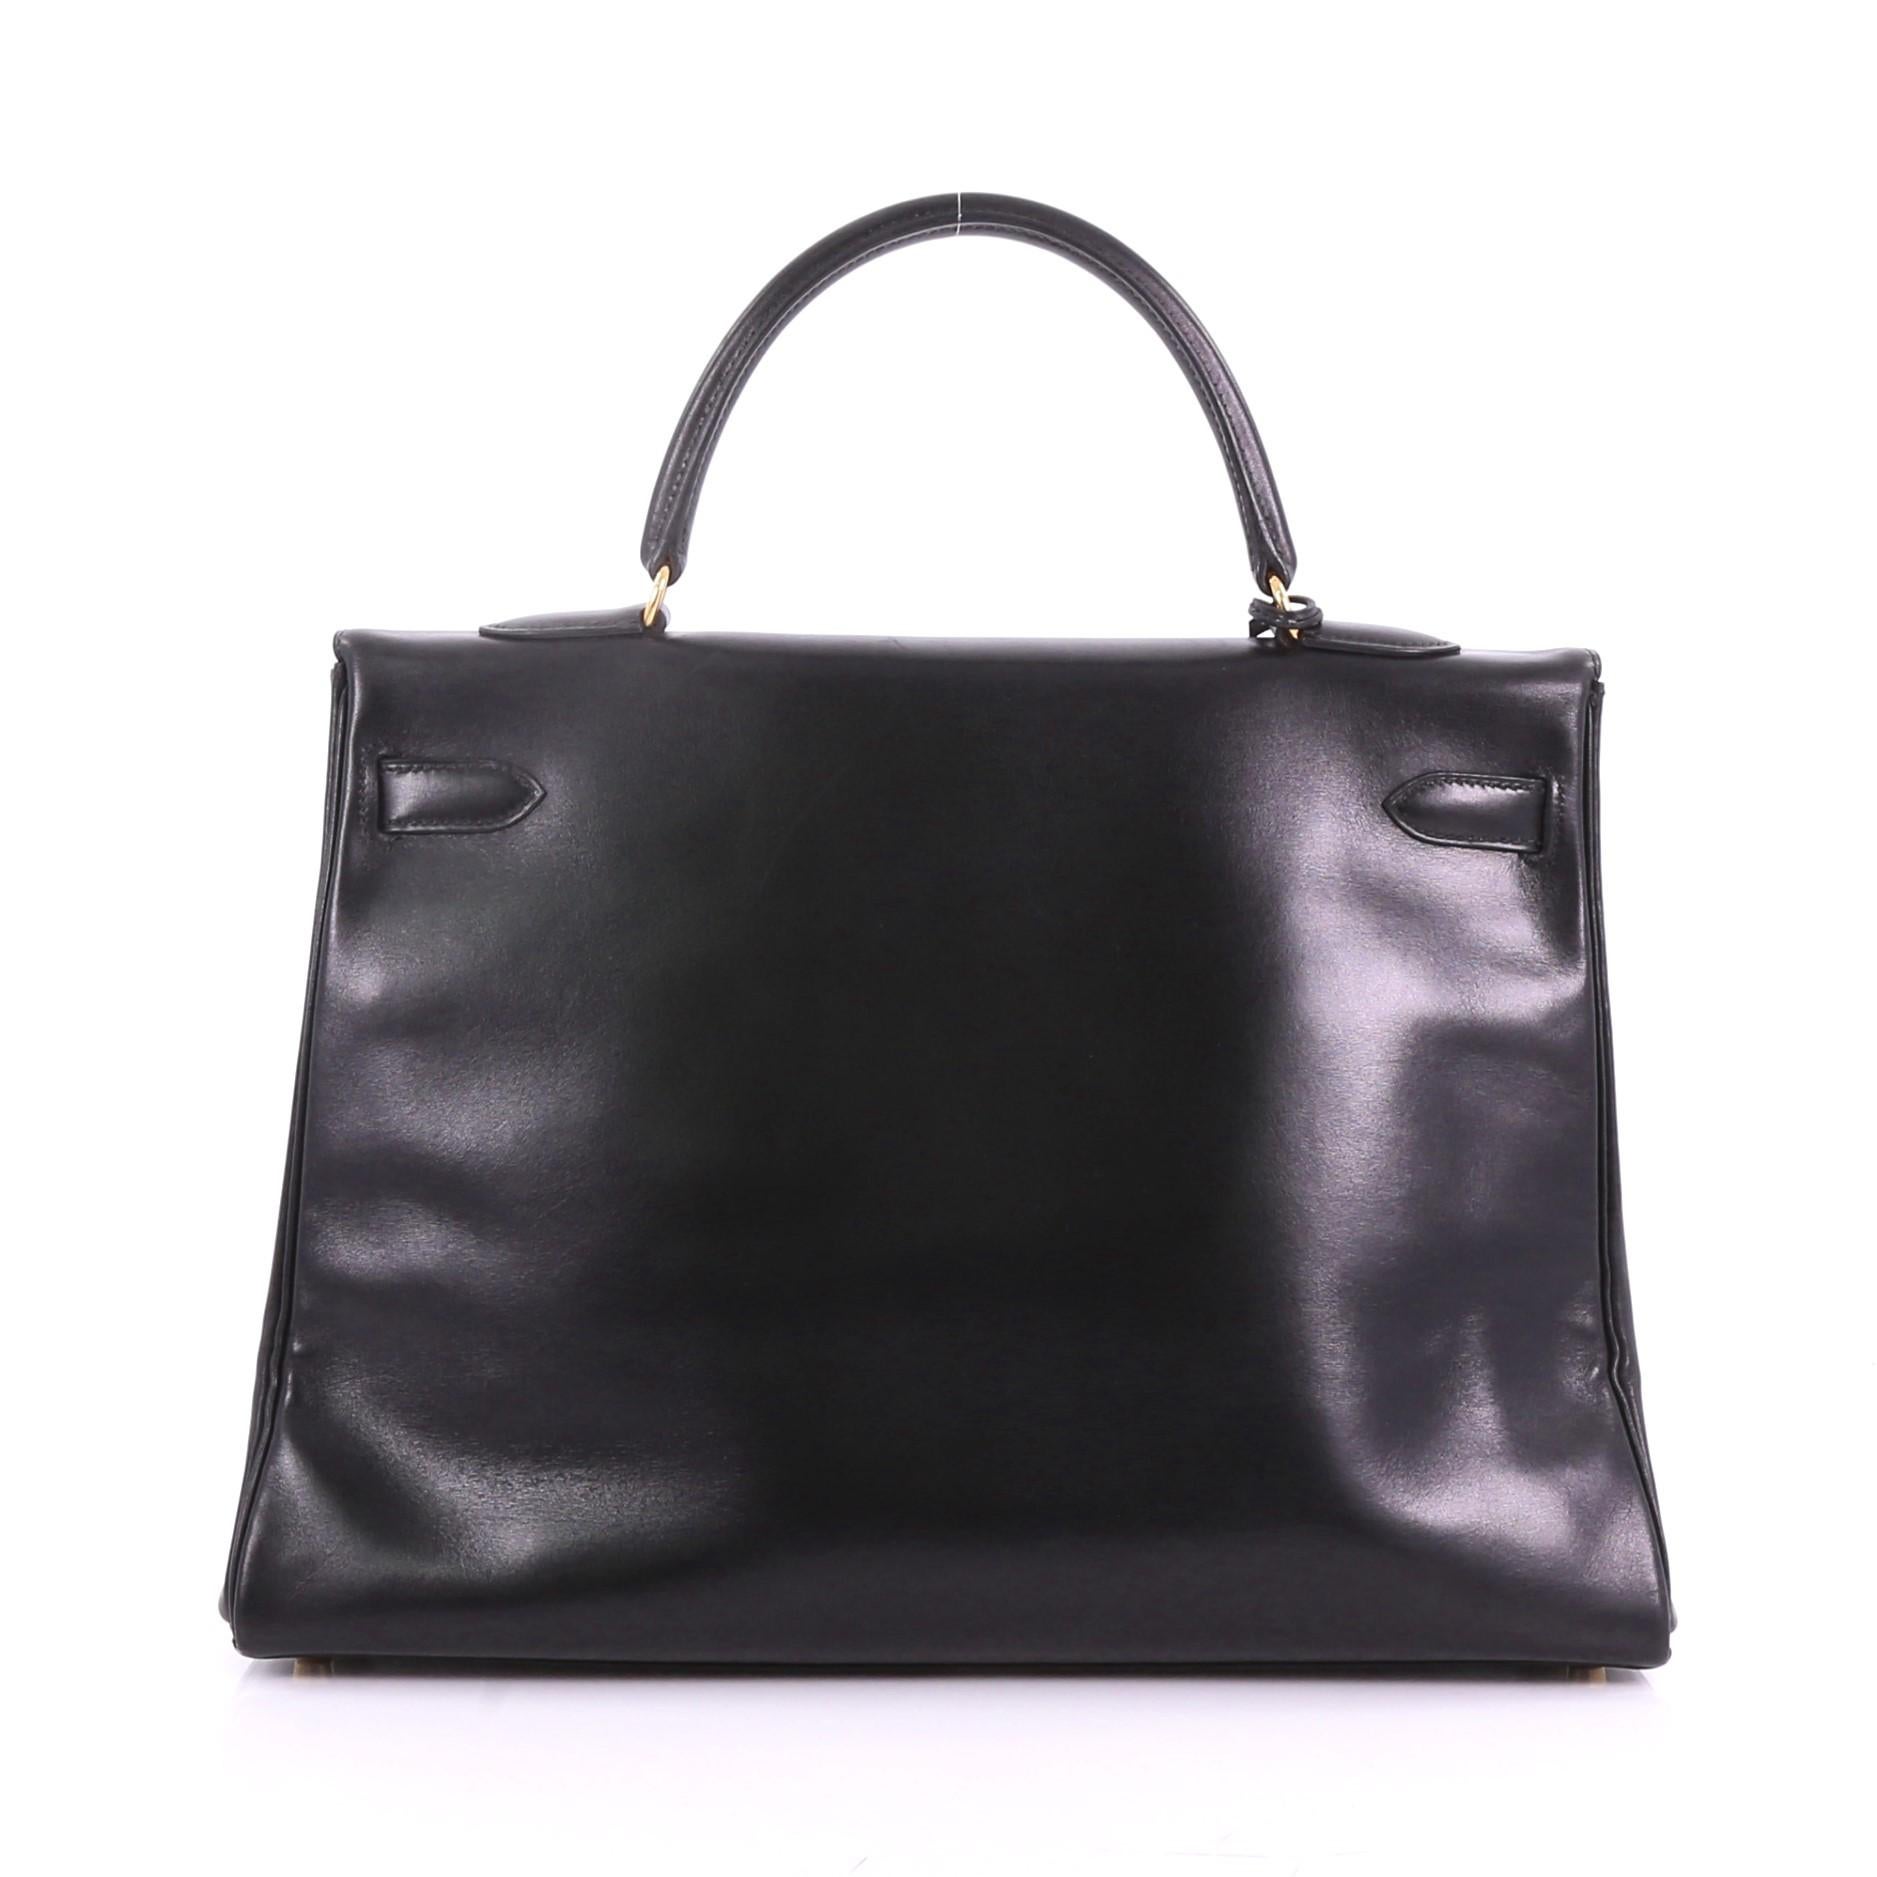 Women's or Men's Hermes Kelly Handbag Black Box Calf with Gold Hardware 35